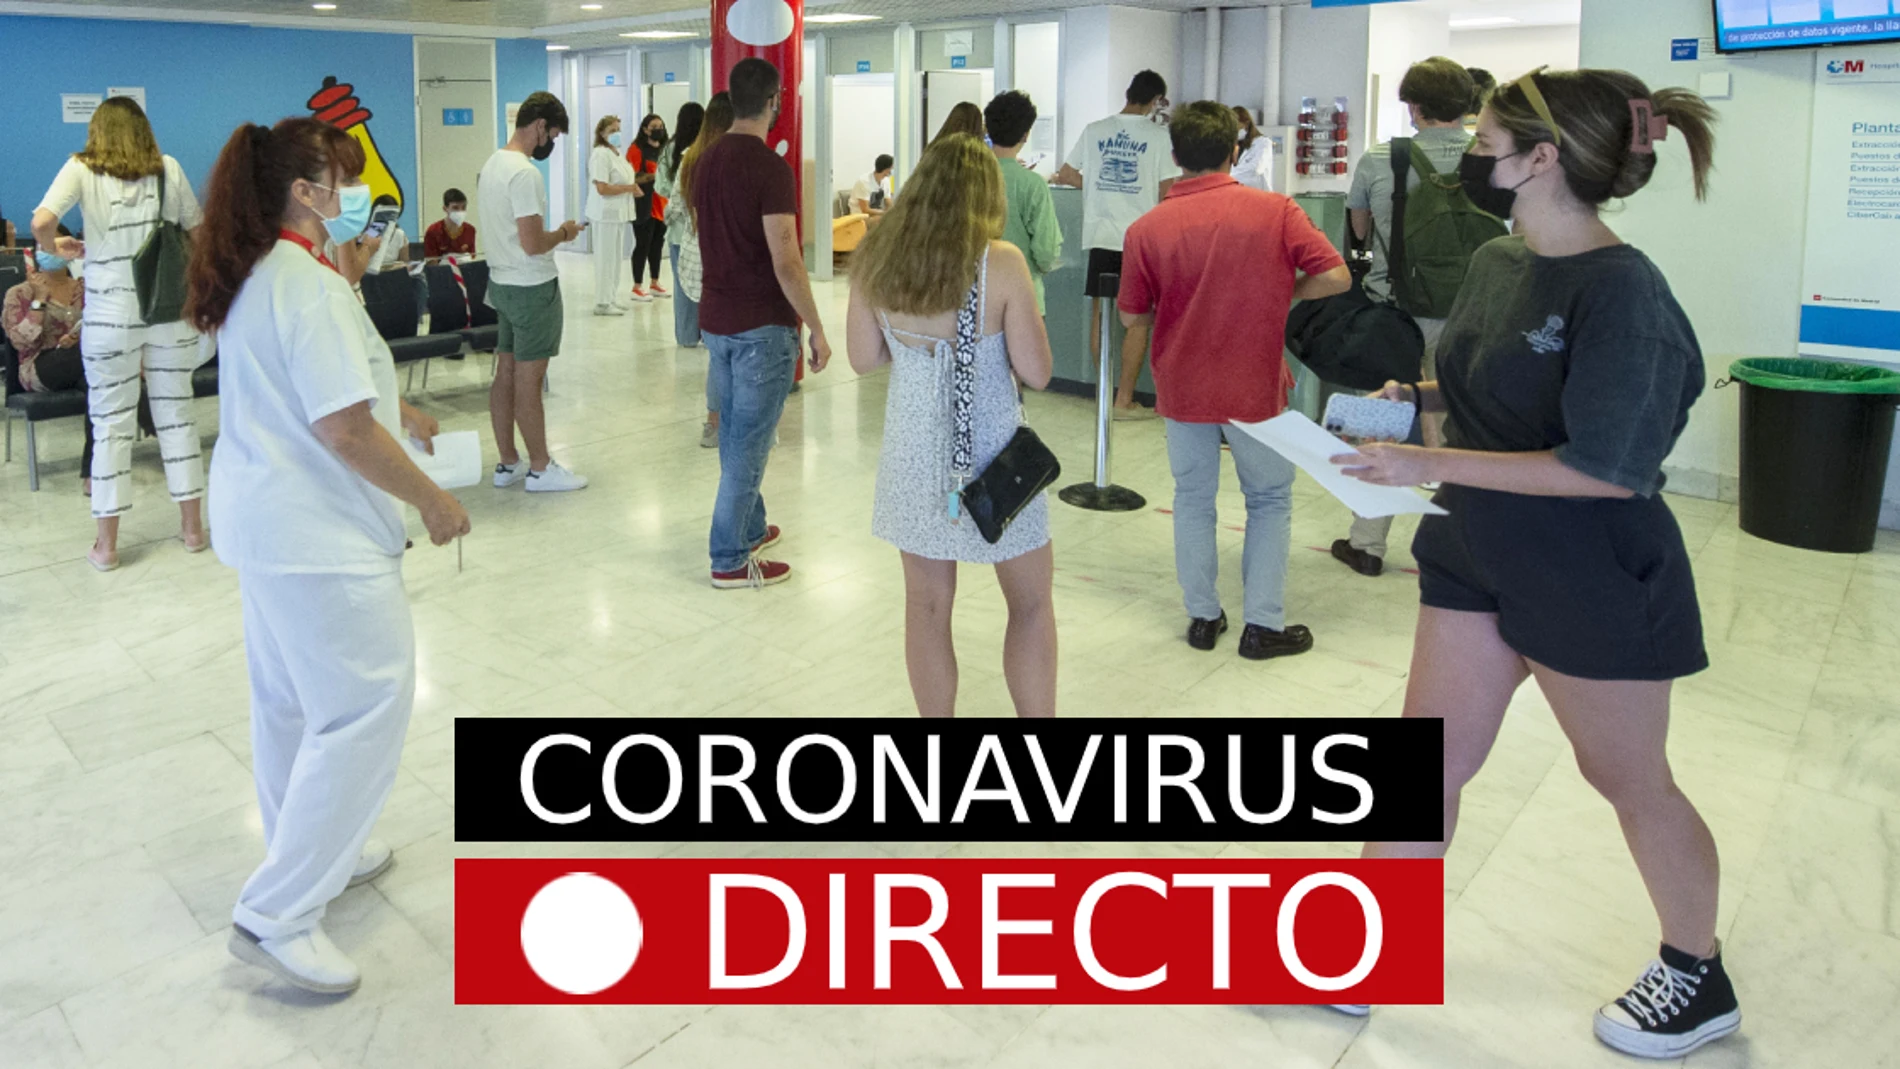 Última hora de coronavirus en España: vacuna de Covid-19, restricciones y certificado, hoy